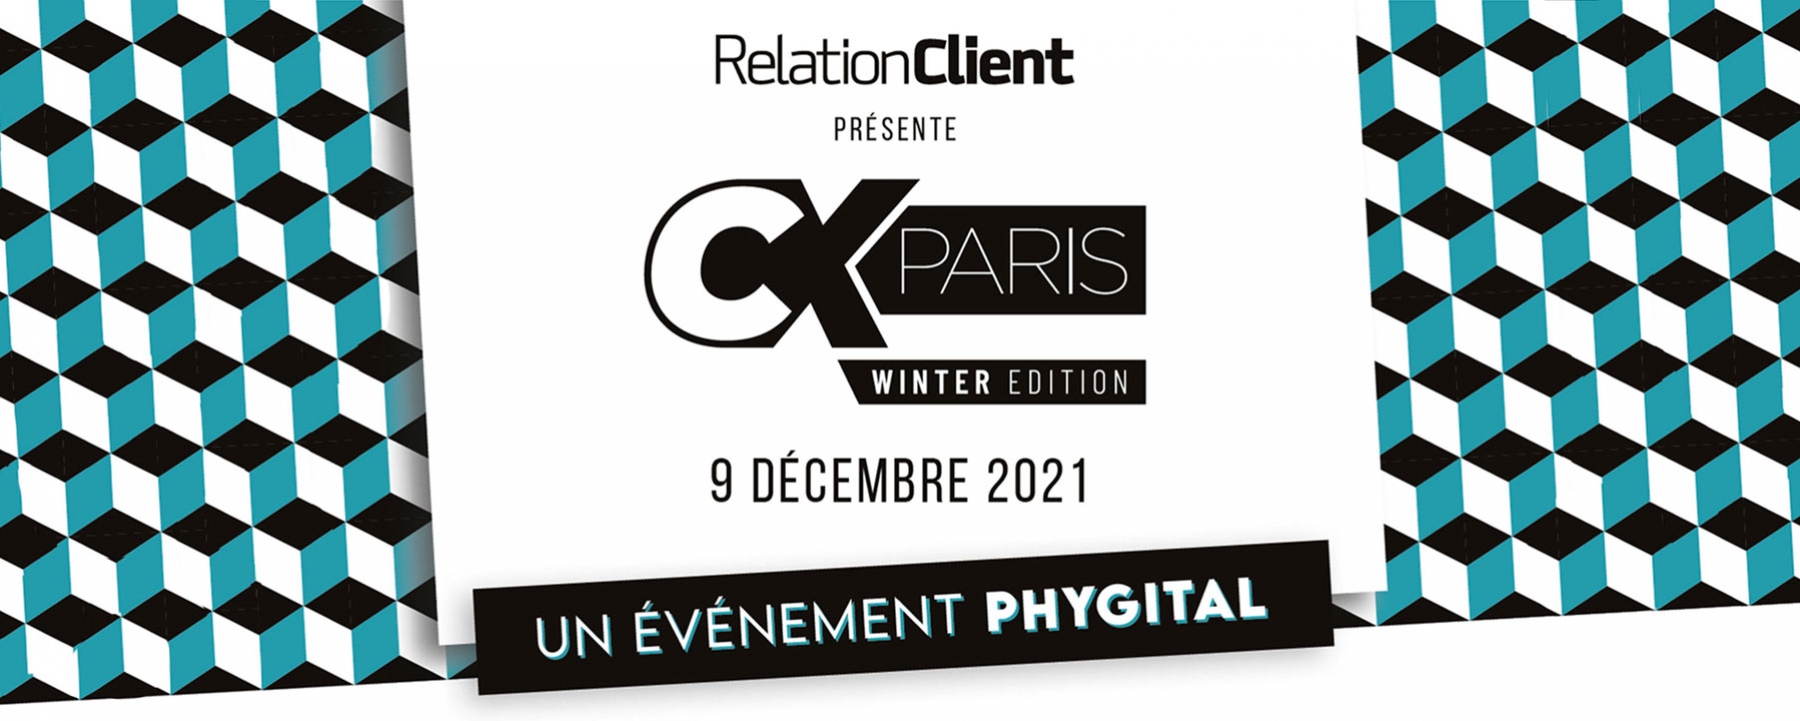 CX Paris 2021 Winter edition